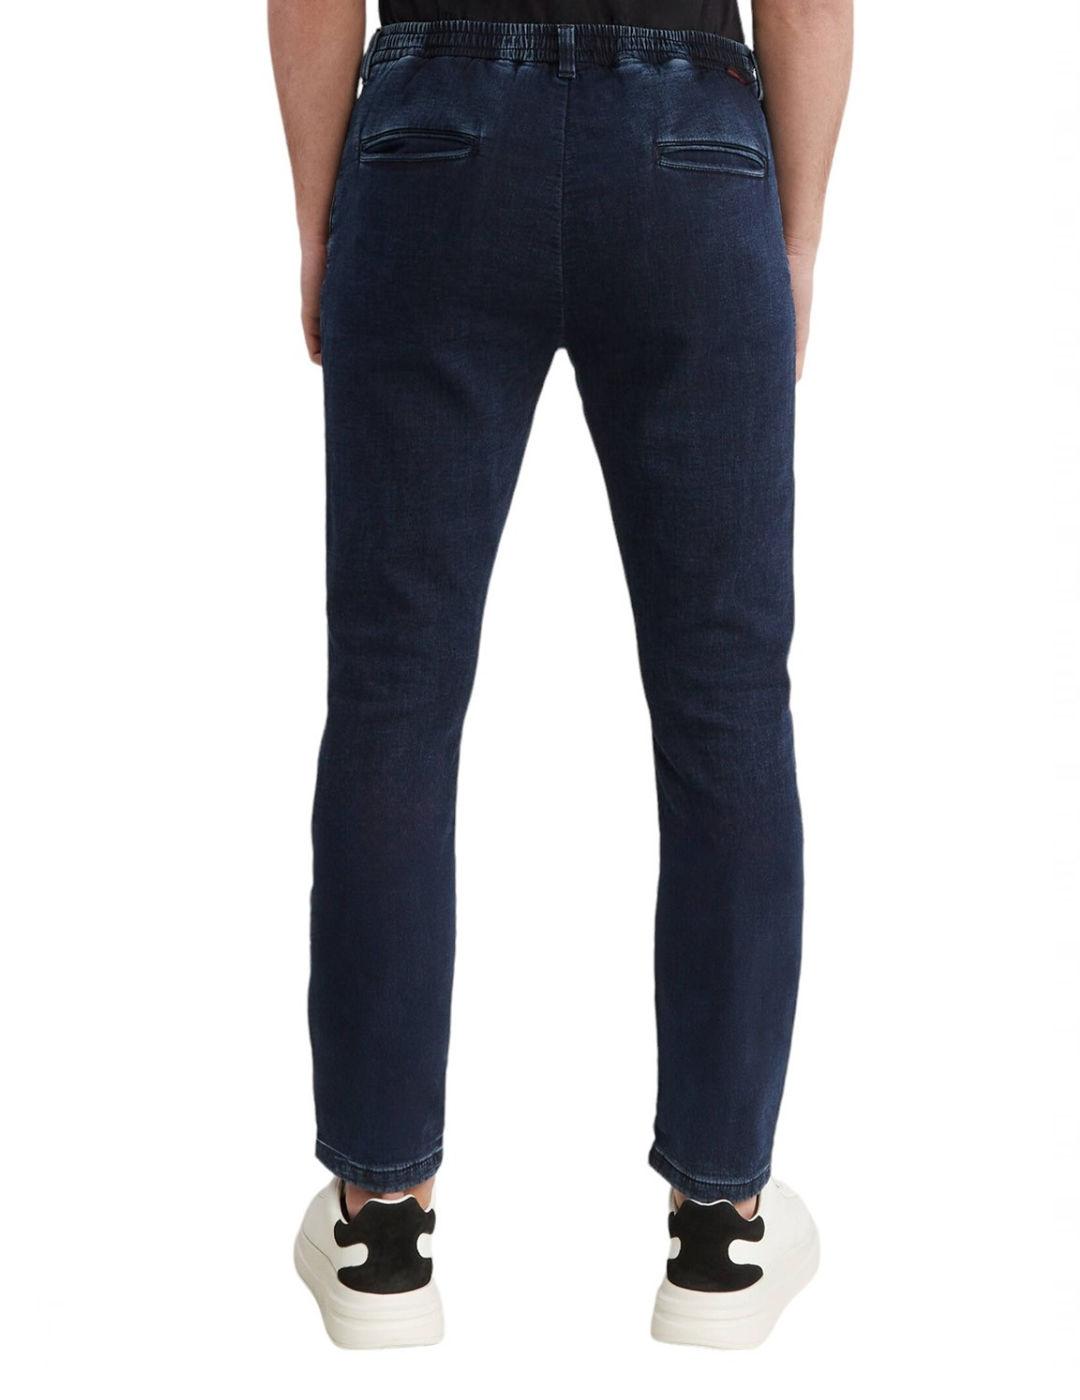 Pantalon Guess Technical azul cintura elástica para hombre